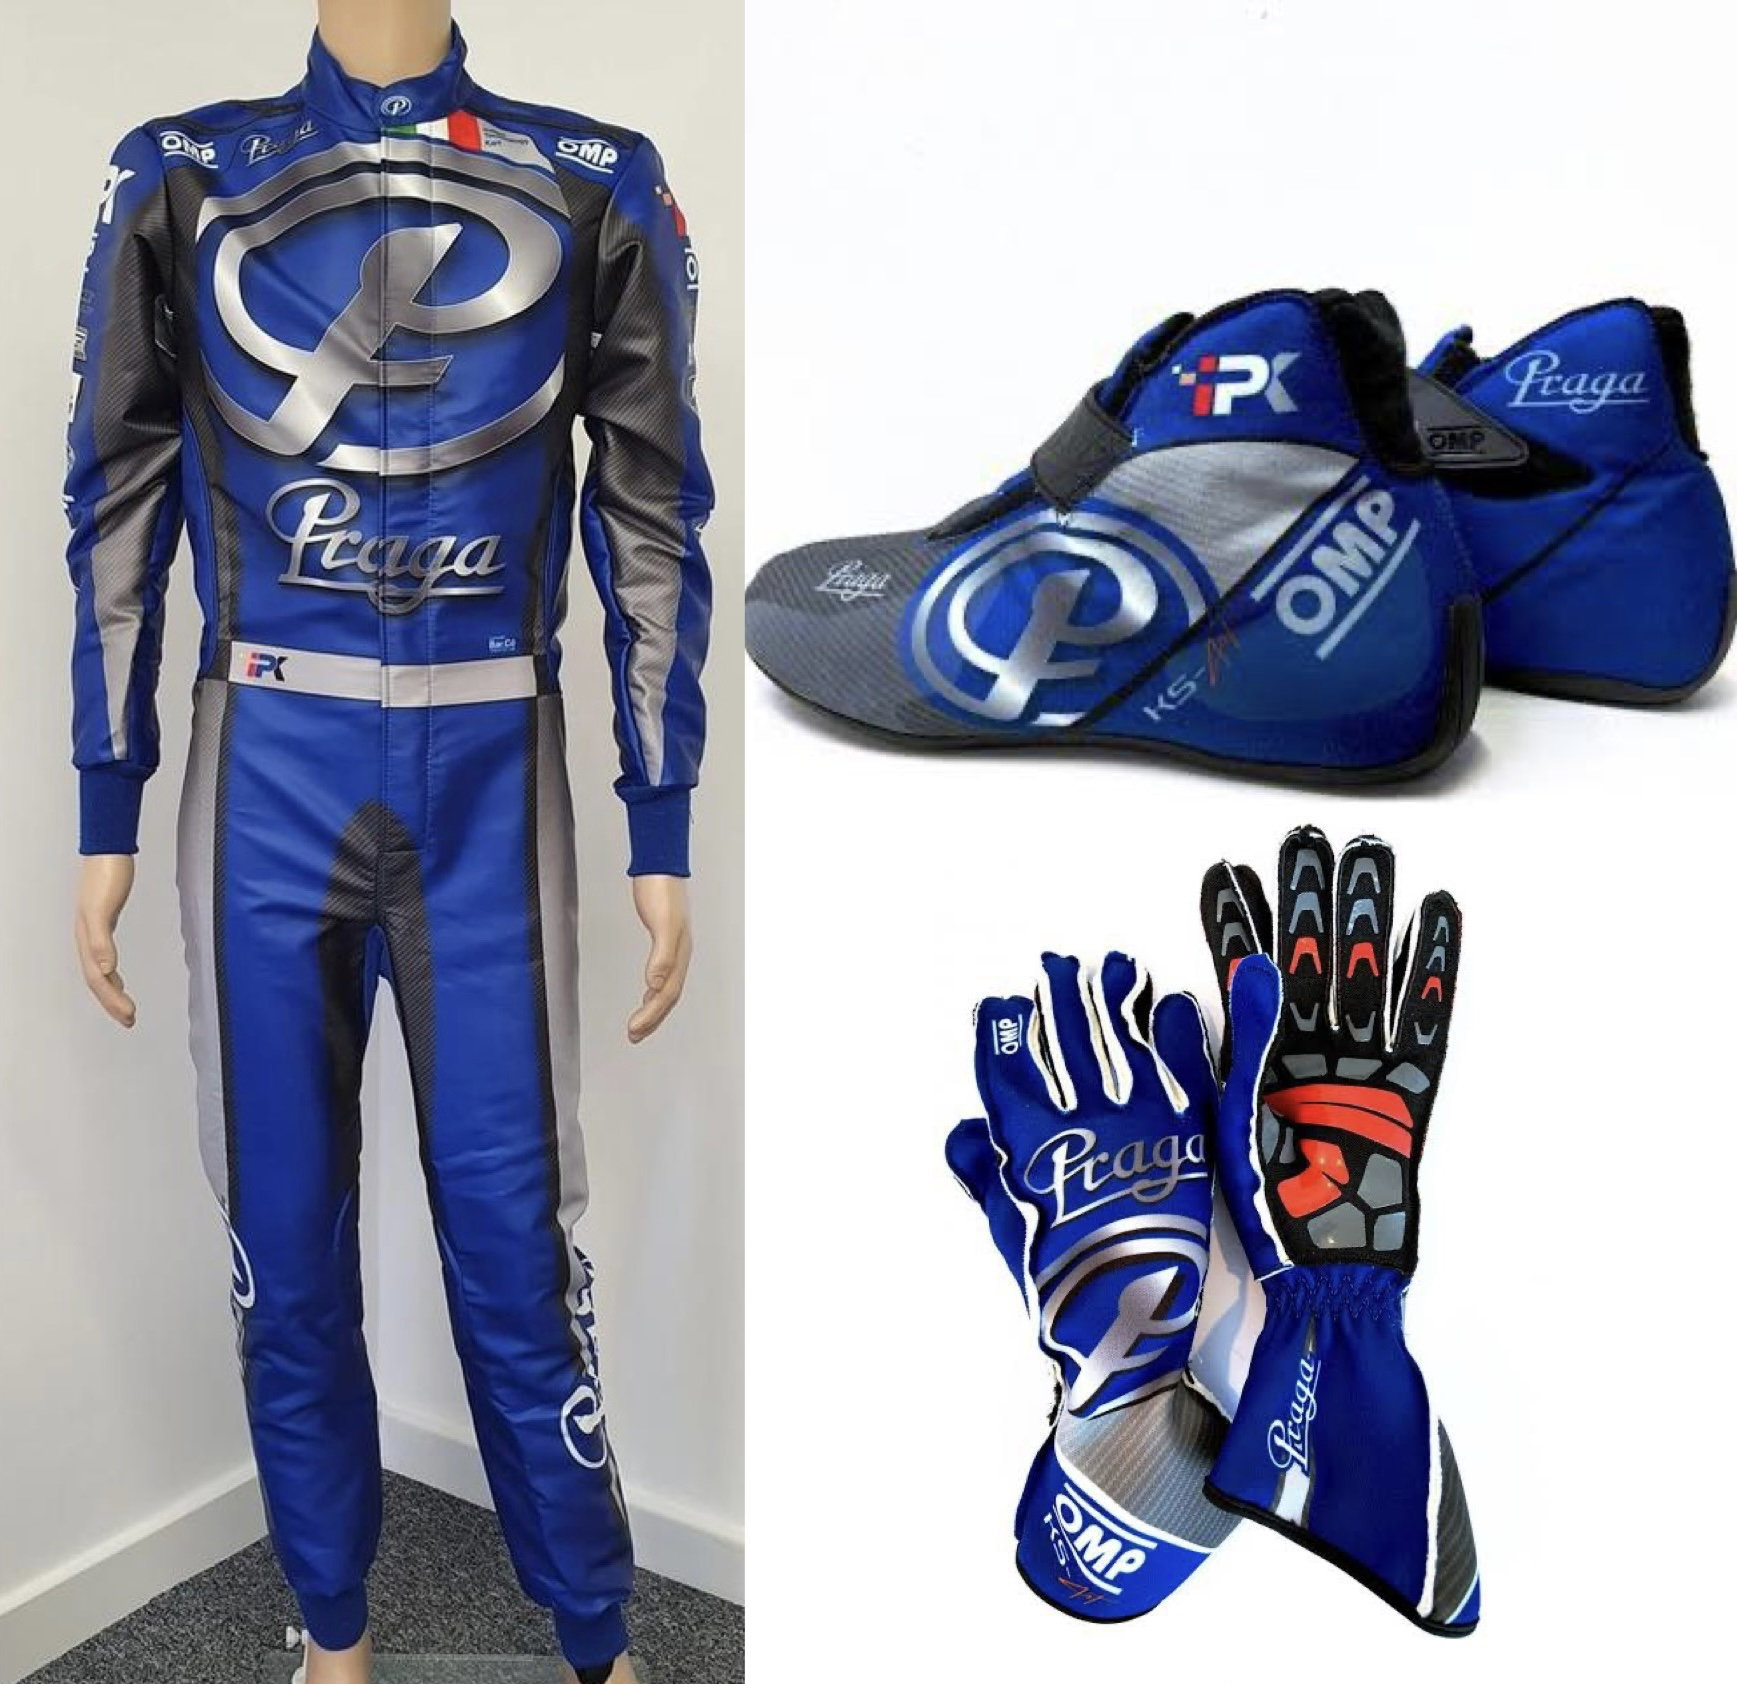 Kart racing gloves - .de